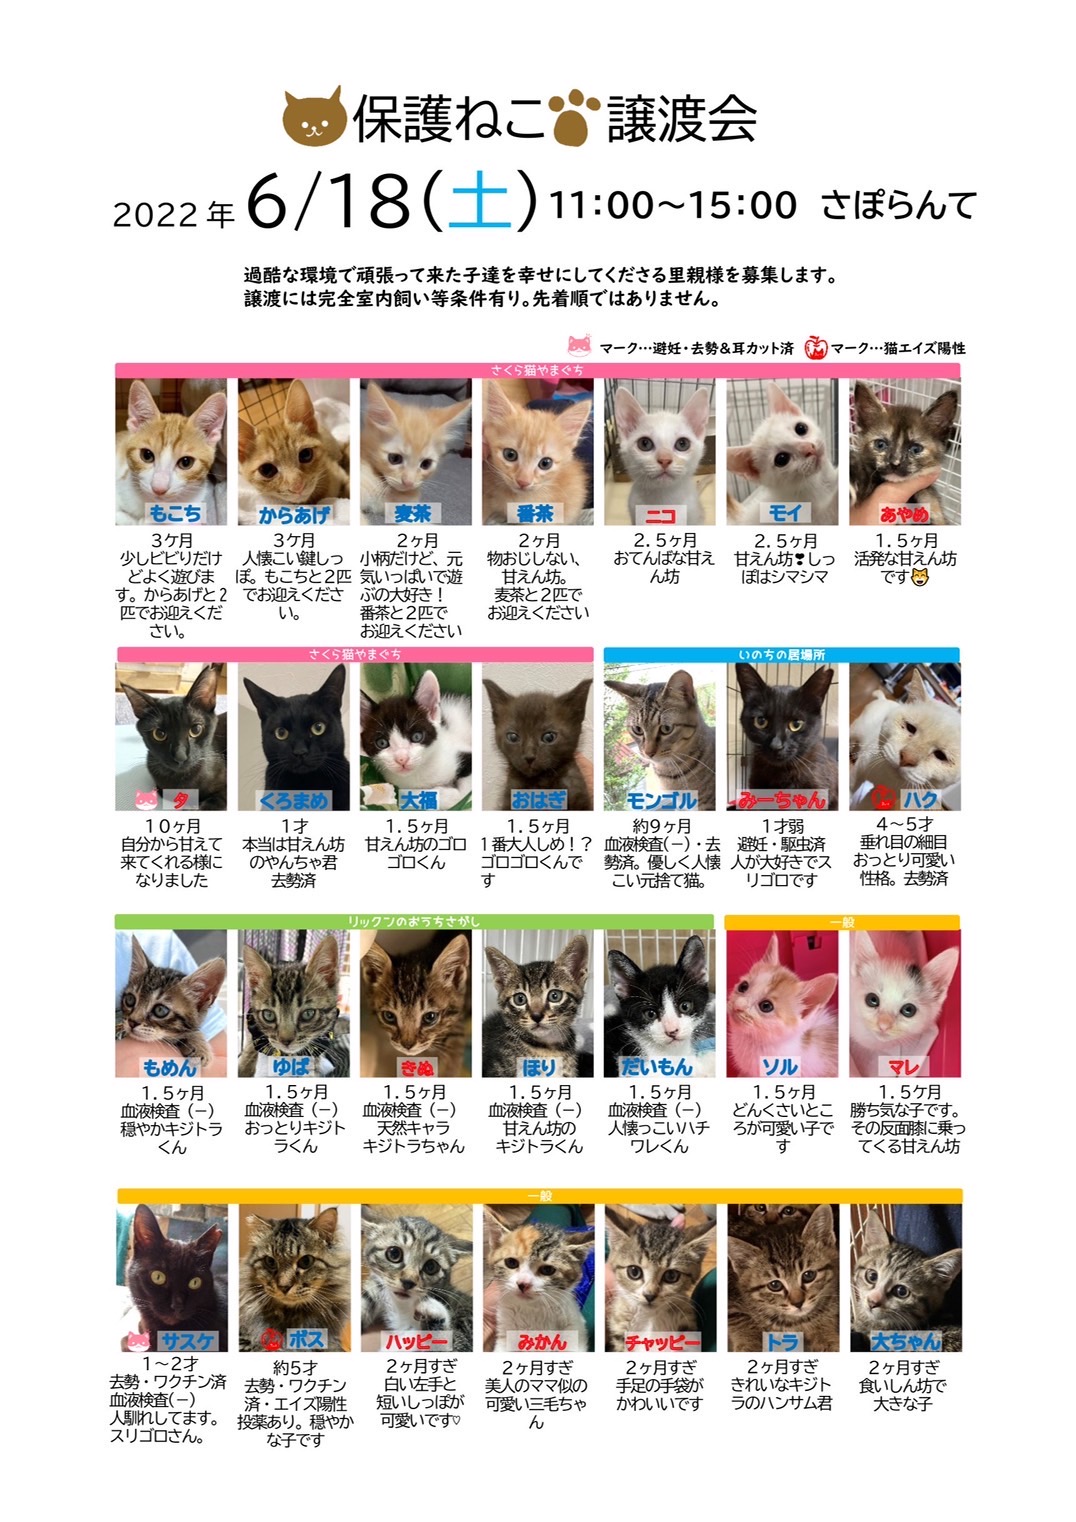 「保護ねこ譲渡会(6/18)」のお知らせ(情報提供)